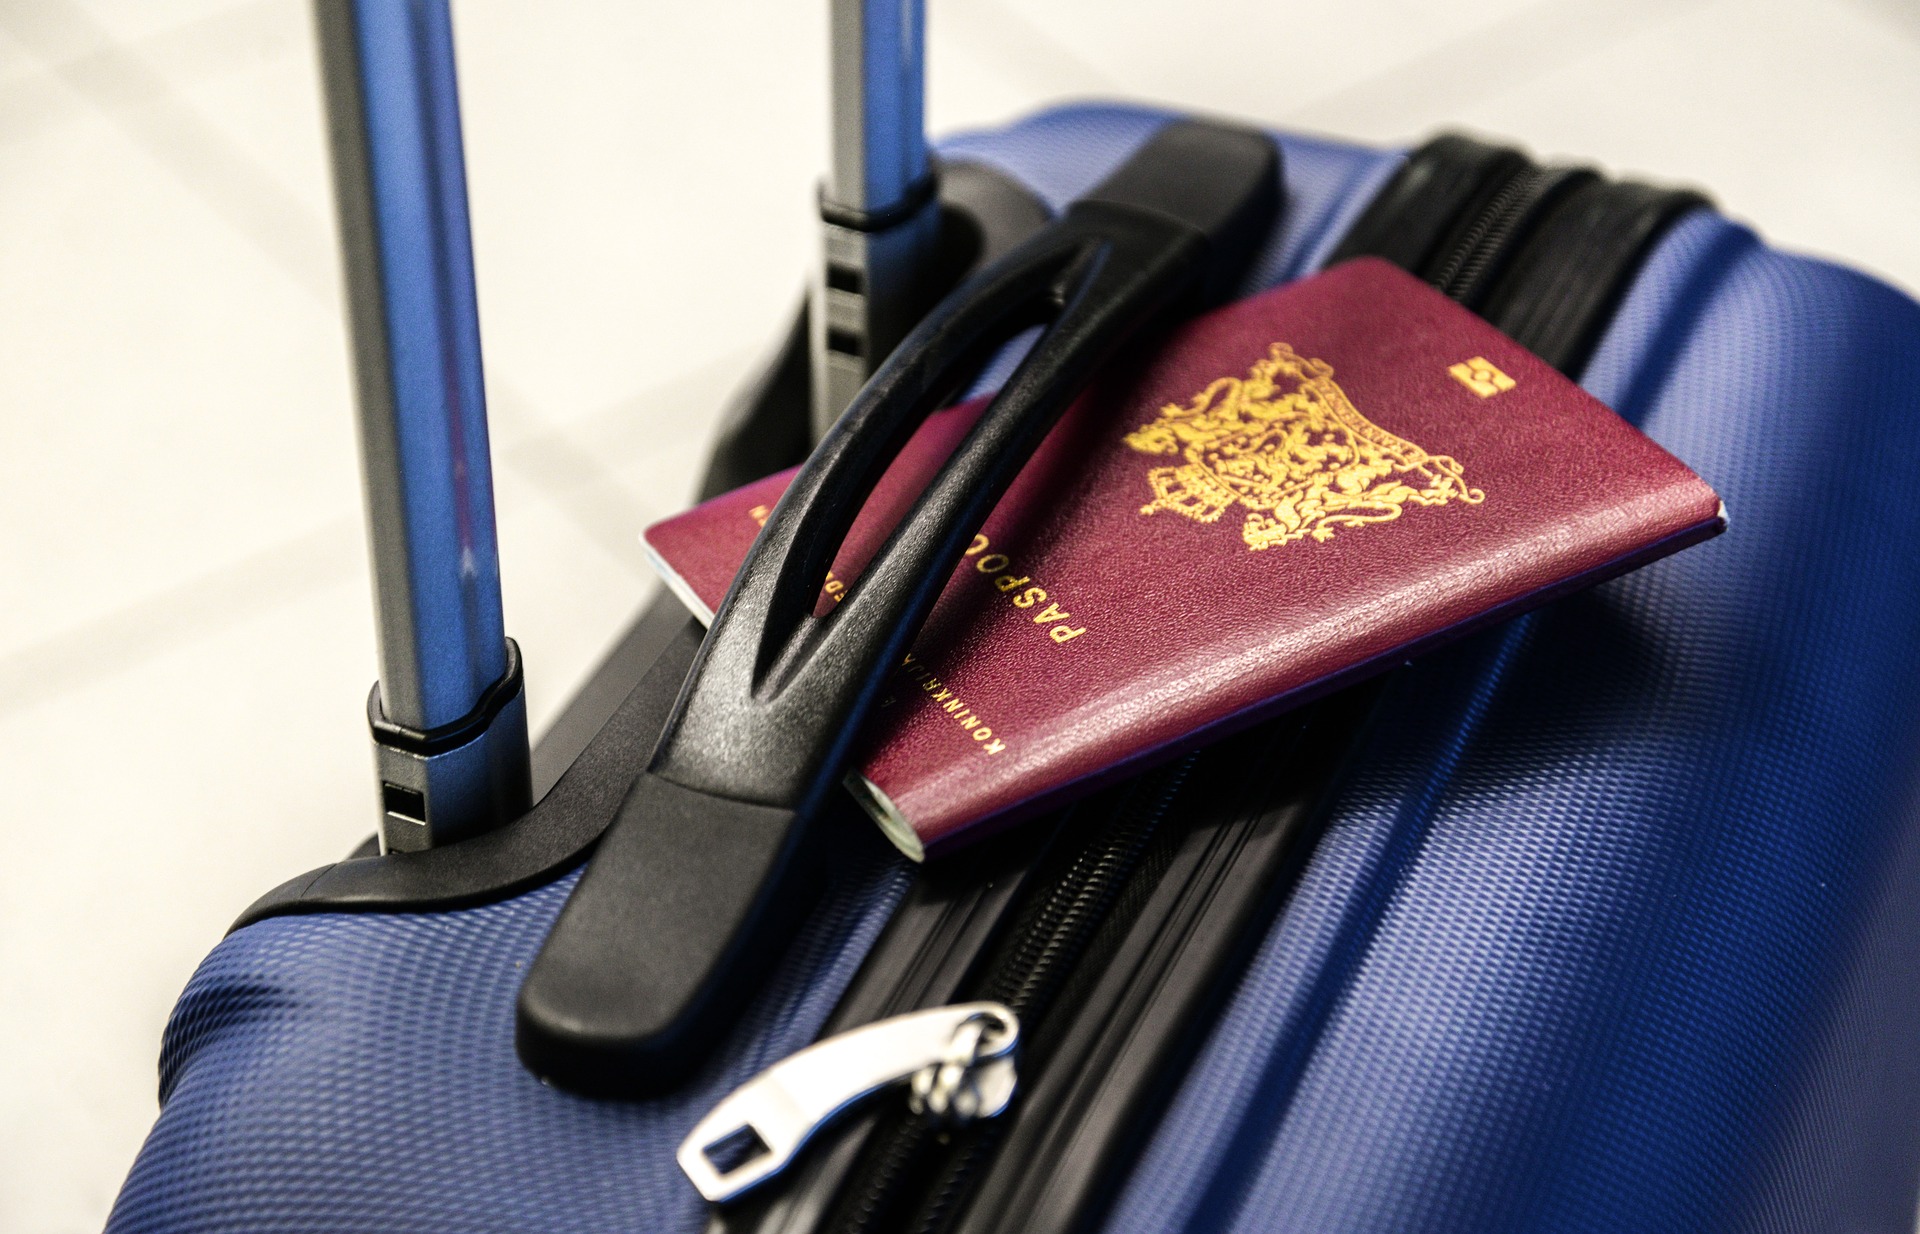 हवाई अड्डे पर खोया सामान: आसानी से अपना सूटकेस खोजने की तरकीब!